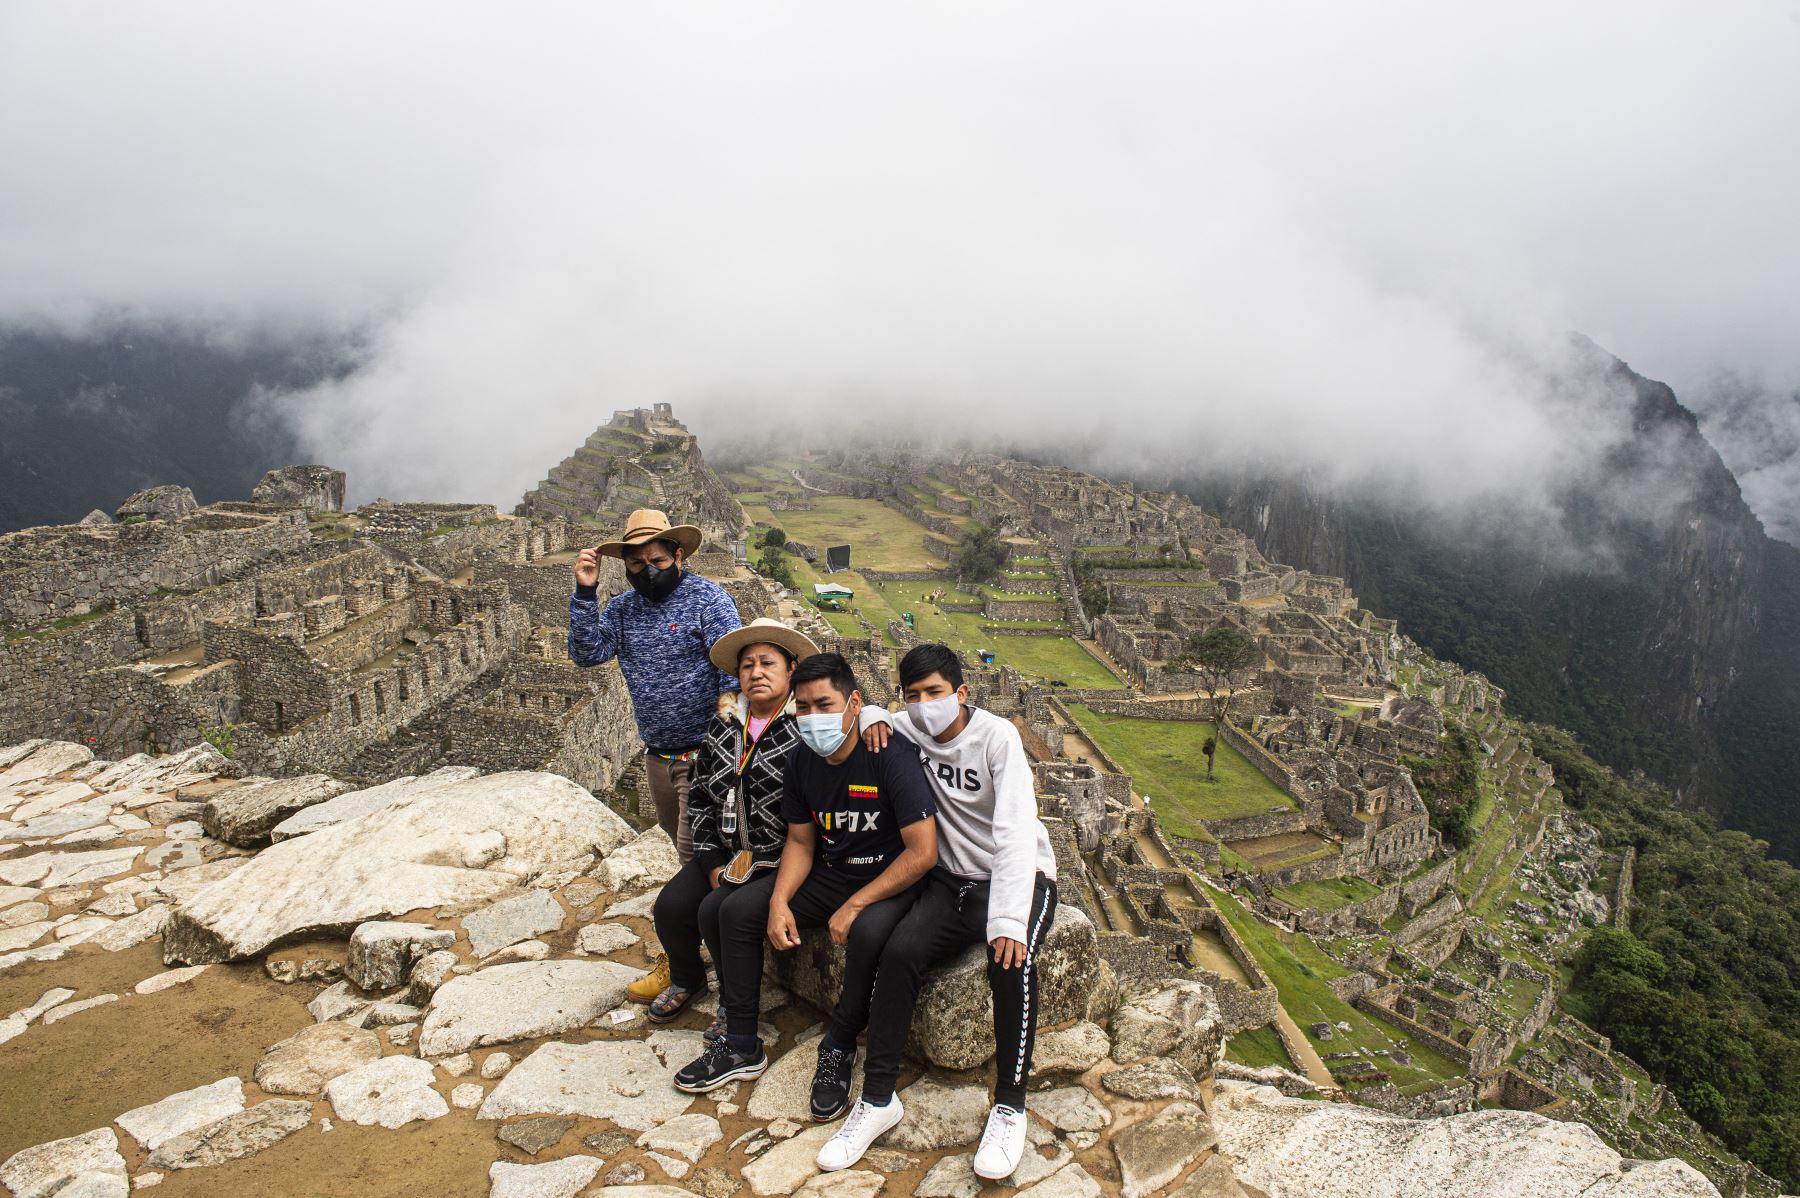 Turistas posan para una foto frente al sitio arqueológico de Machu Picchu, Cusco, en Perú, el 02 de noviembre de 2020, en medio de la pandemia del coronavirus. La ciudadela inca de Machu Picchu, reabrió después de un bloqueo de casi ocho meses debido a las restricciones. Foto: AFP